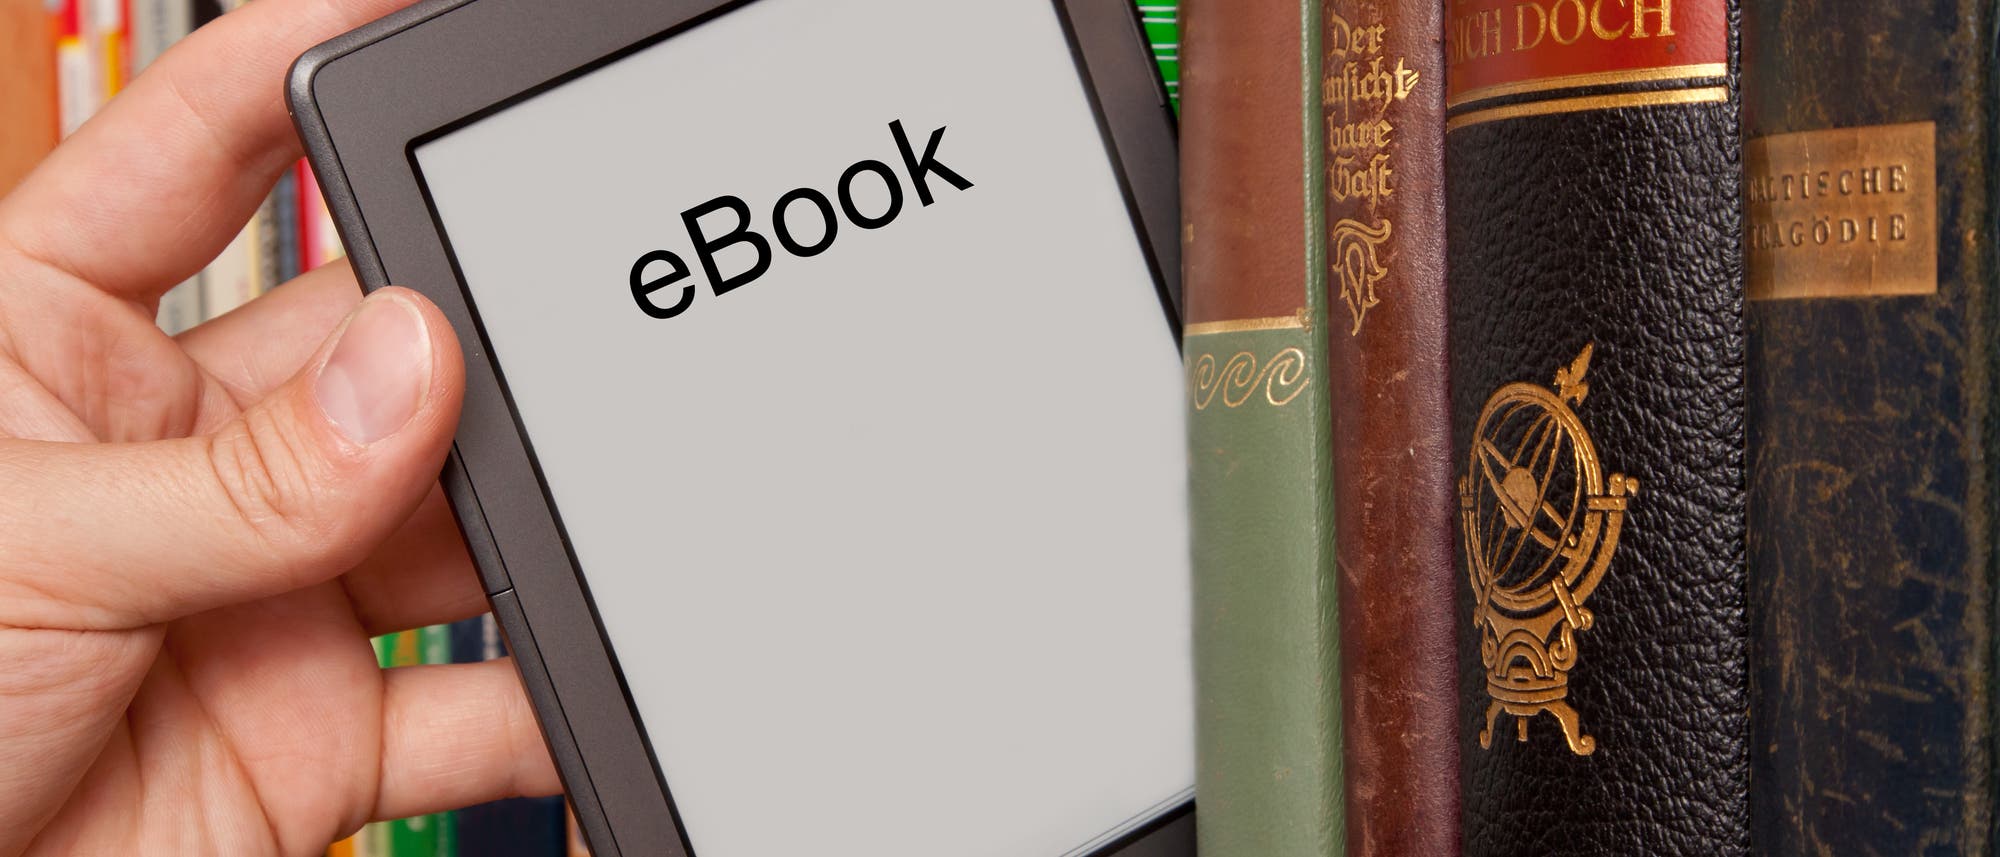 Eine Hand nimmt ein E-Book zwischen Büchern aus dem Bücherregal.